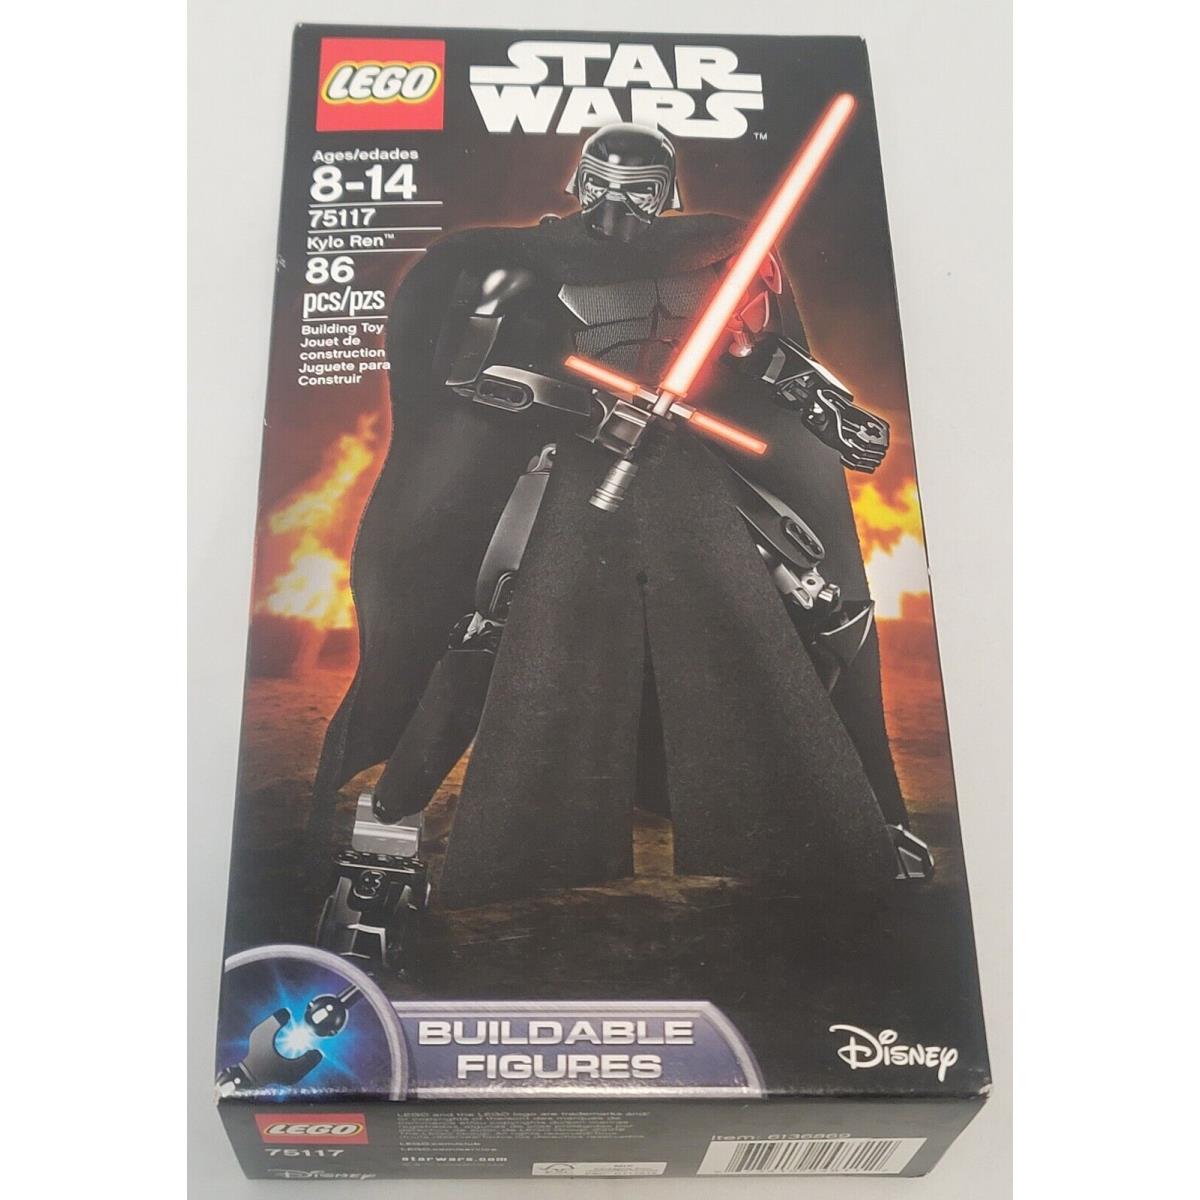 Lego 75117 Kylo Ren Star Wars Buildable Figures Disney